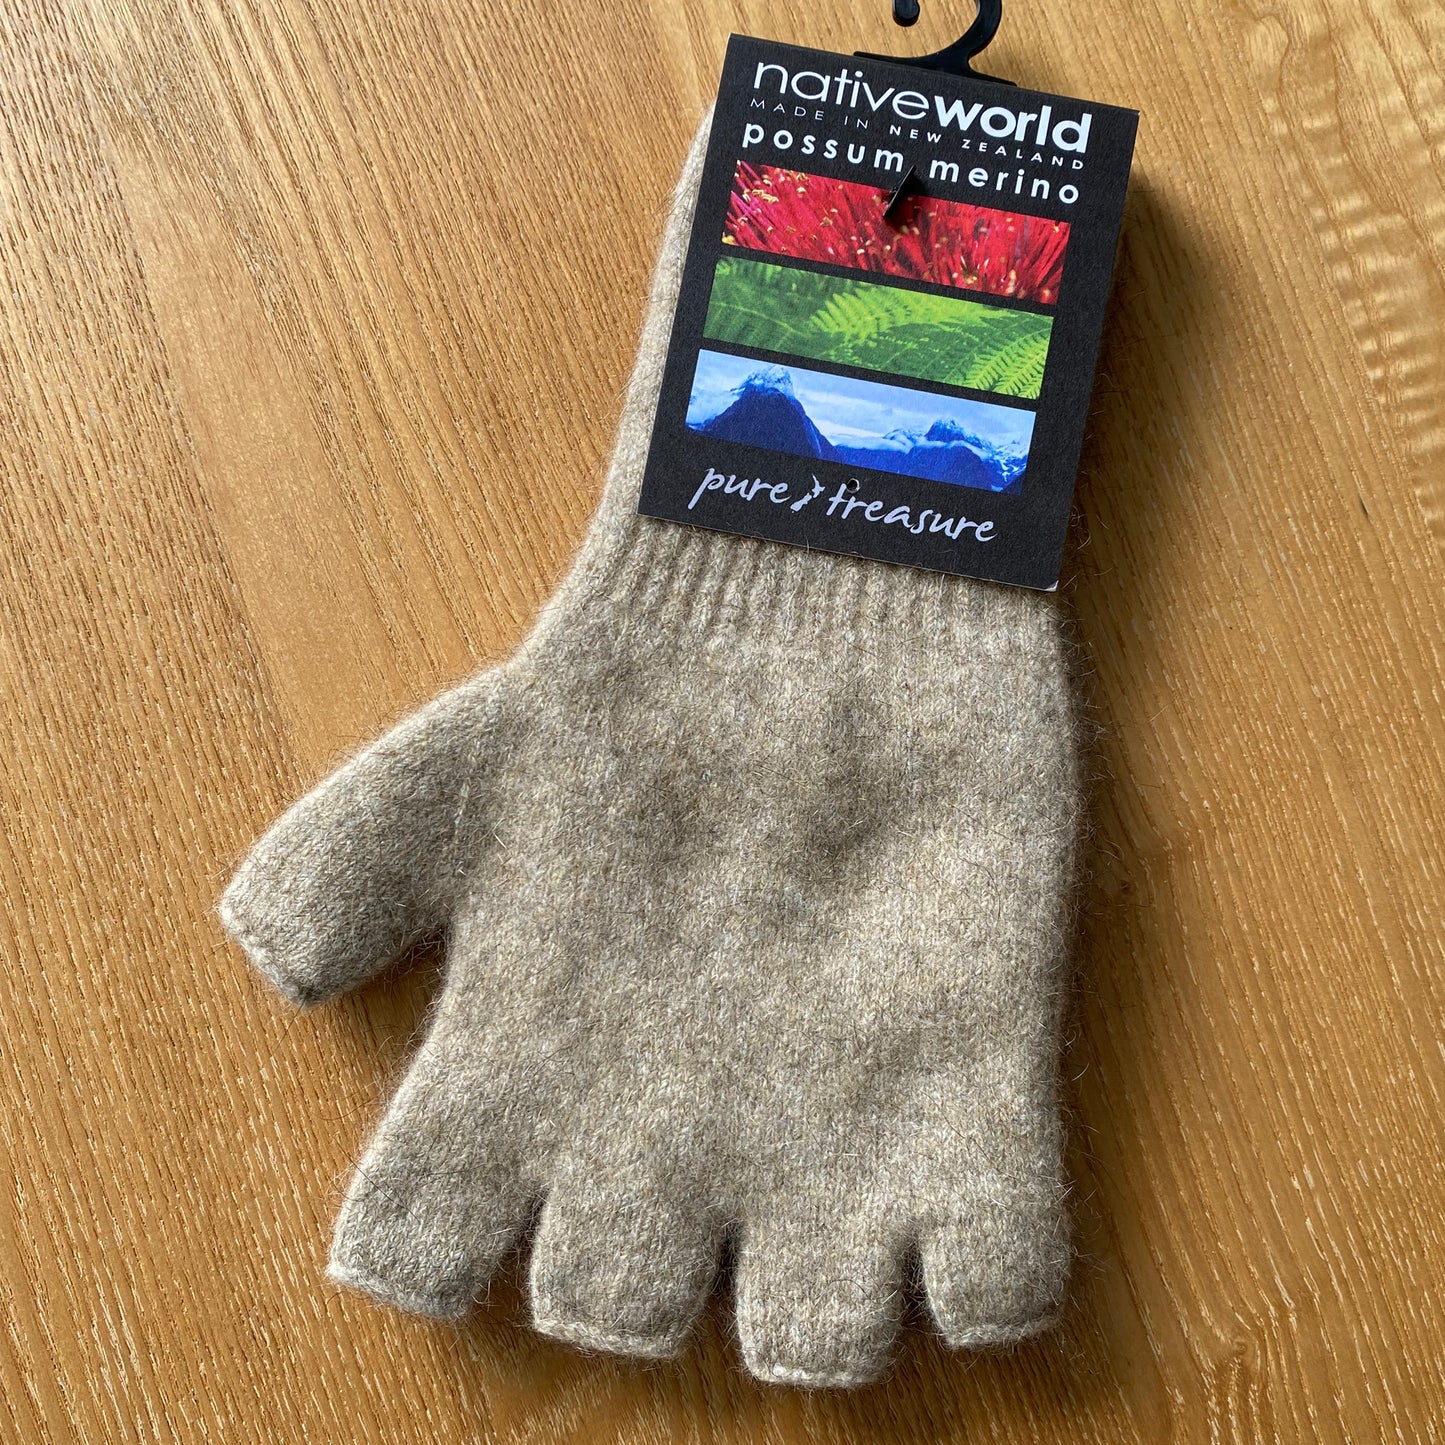 Oatmeal Possum Merino Fingerless Gloves